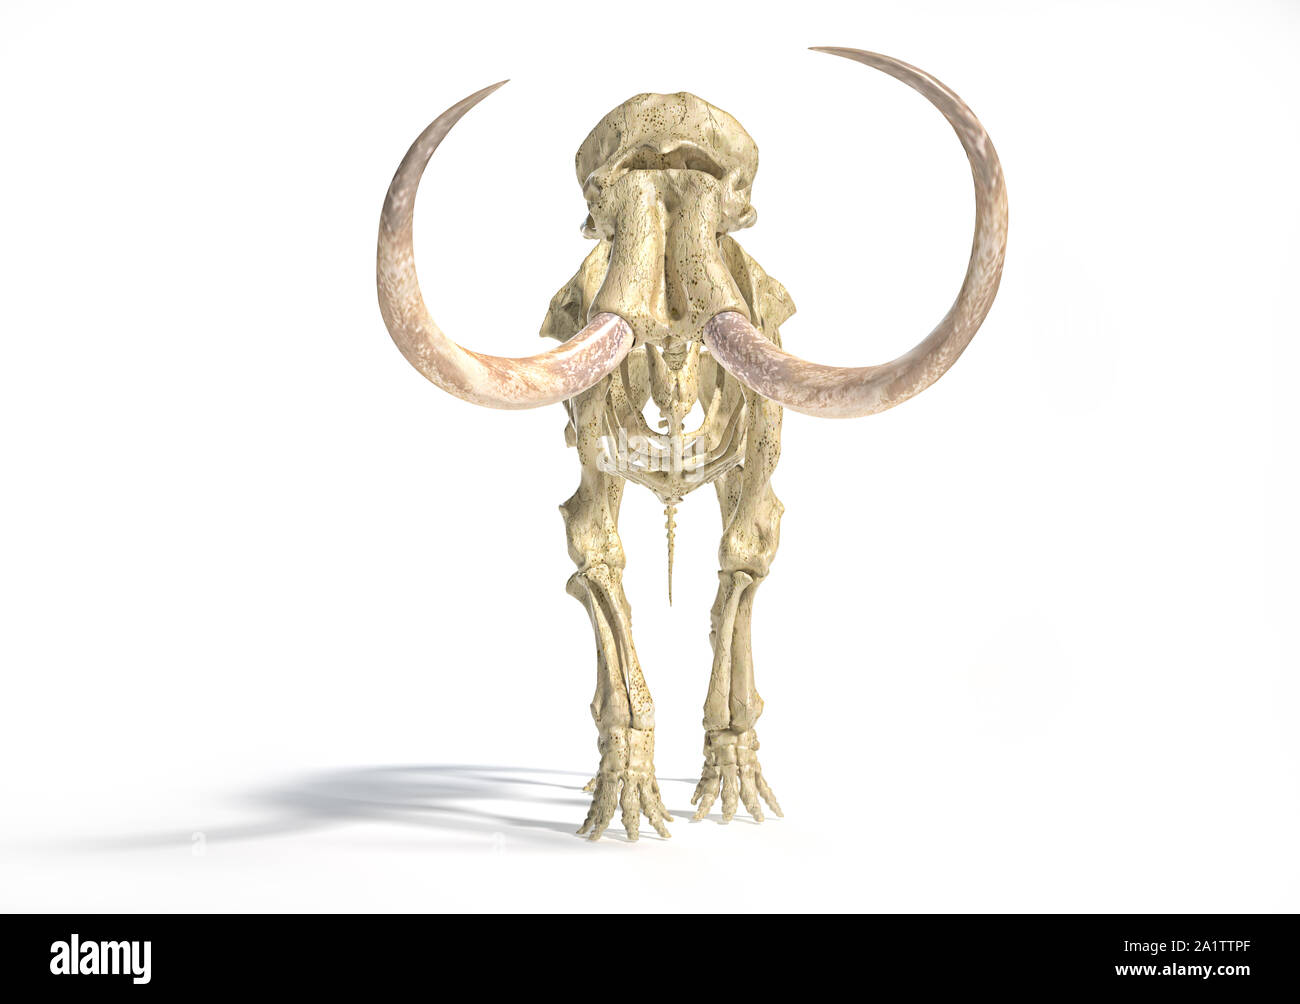 Woolly mammoth Skelett, realistische 3D-Illustration, gesehen von der Vorderseite. Auf weissem Hintergrund und ließ Schatten. Stockfoto